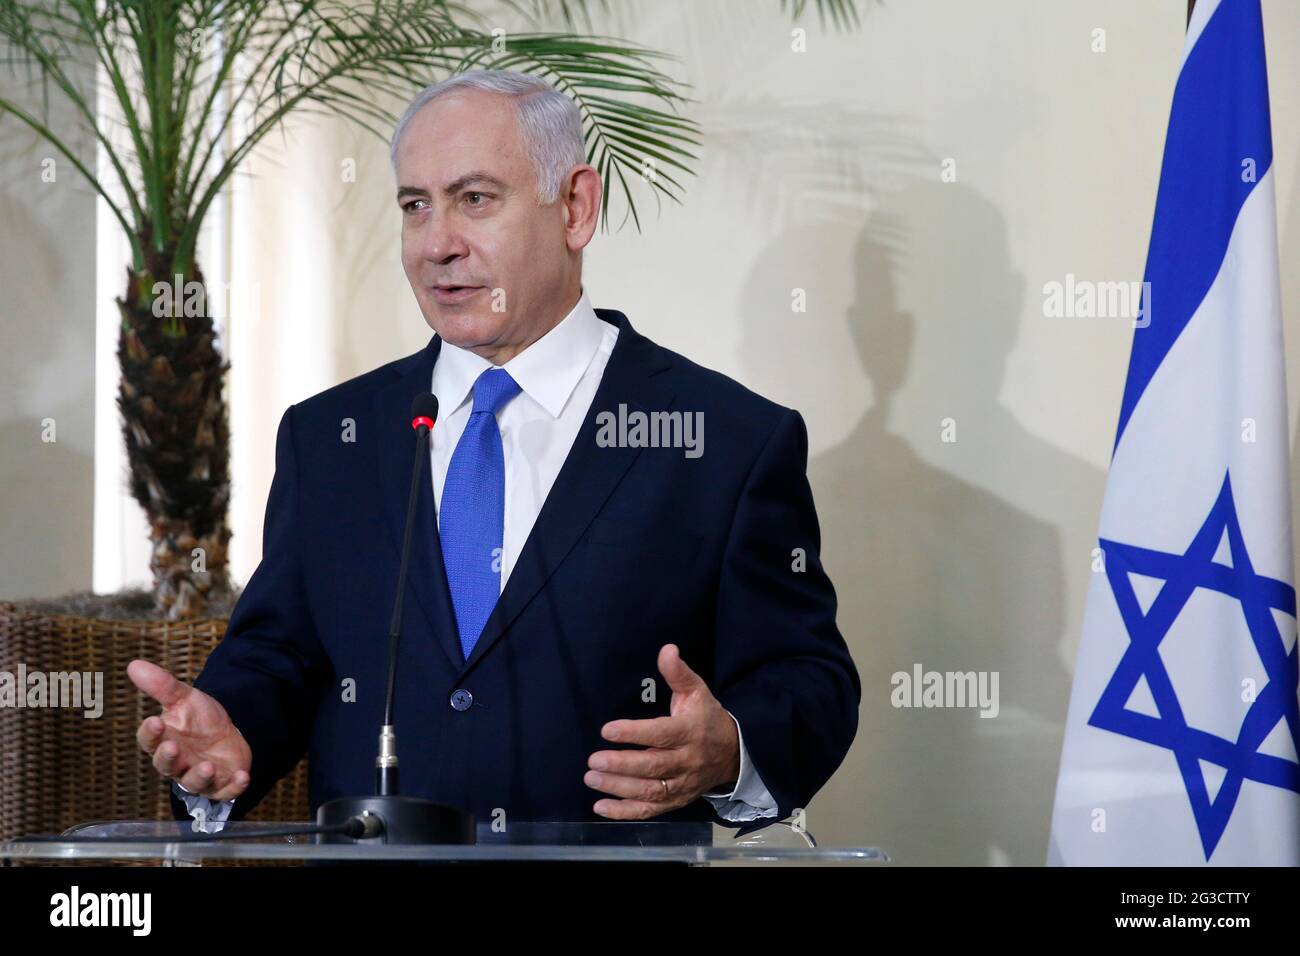 Benjamin Netanyahu Premier ministre d'Israël visite la Synagogue de Copacabana - Rio de Janeiro, Brésil, 12.28.2018 Banque D'Images